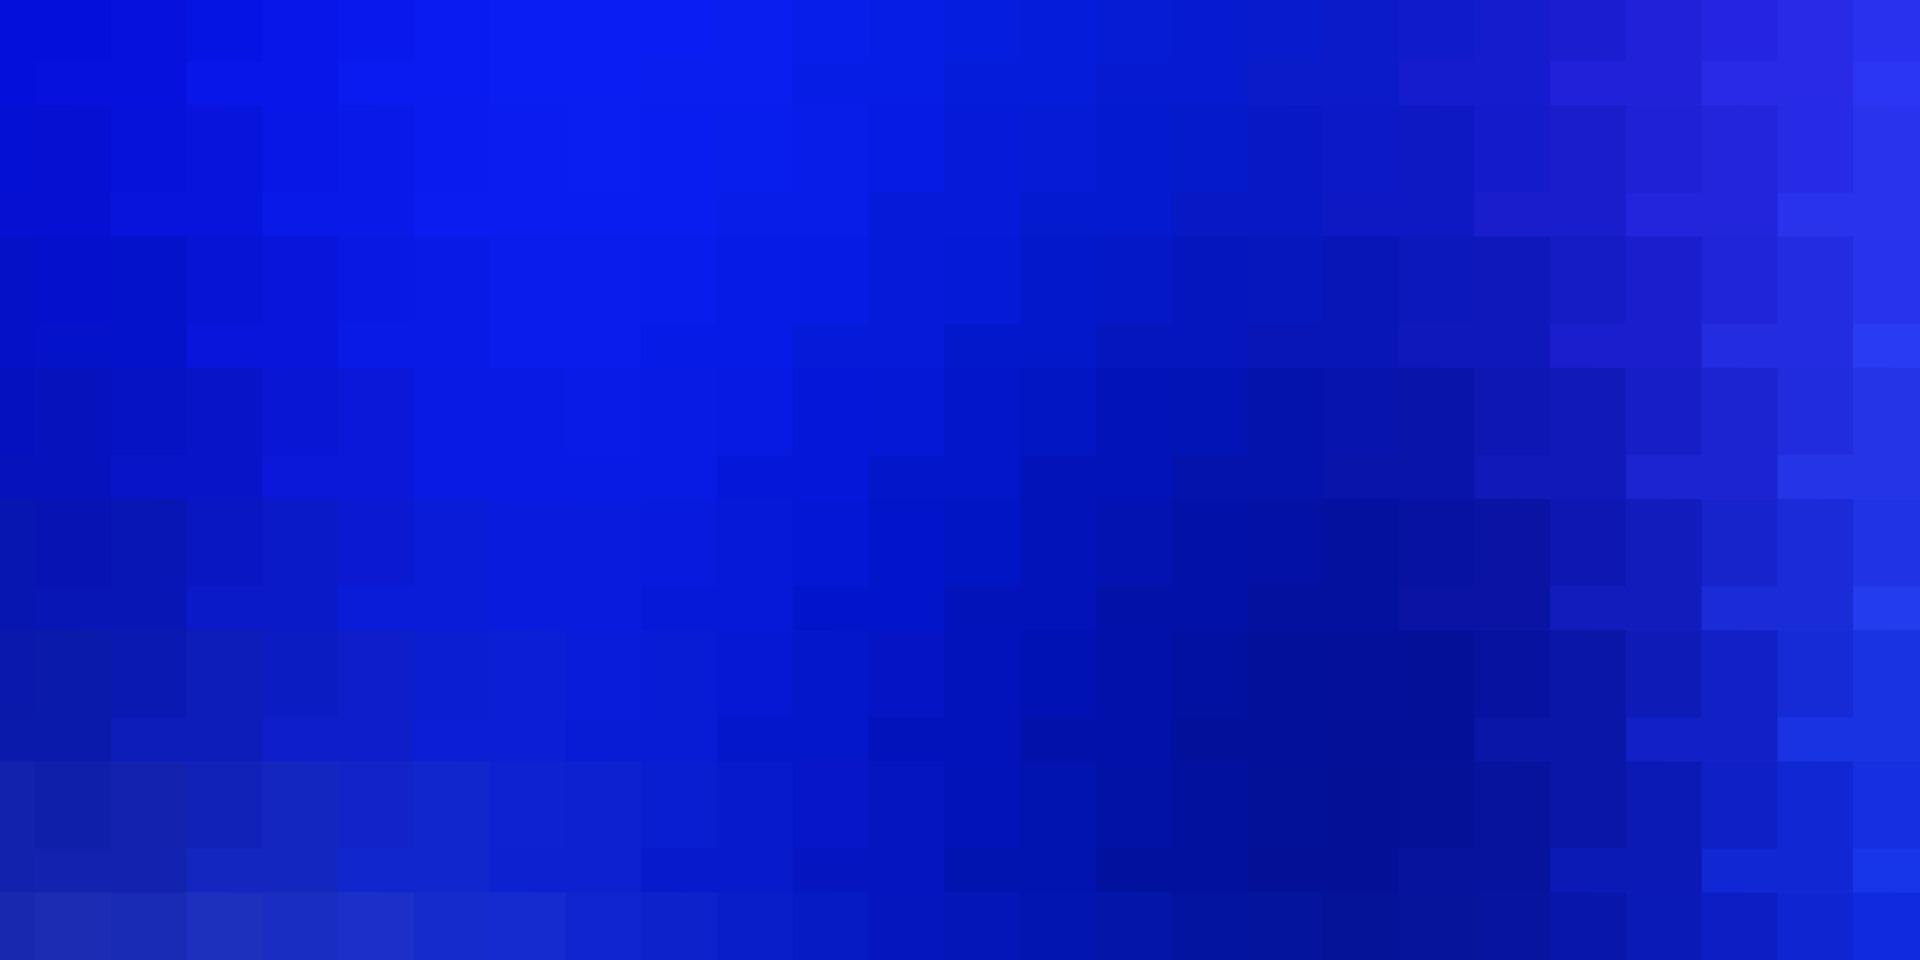 fond de vecteur bleu clair dans un style polygonal.